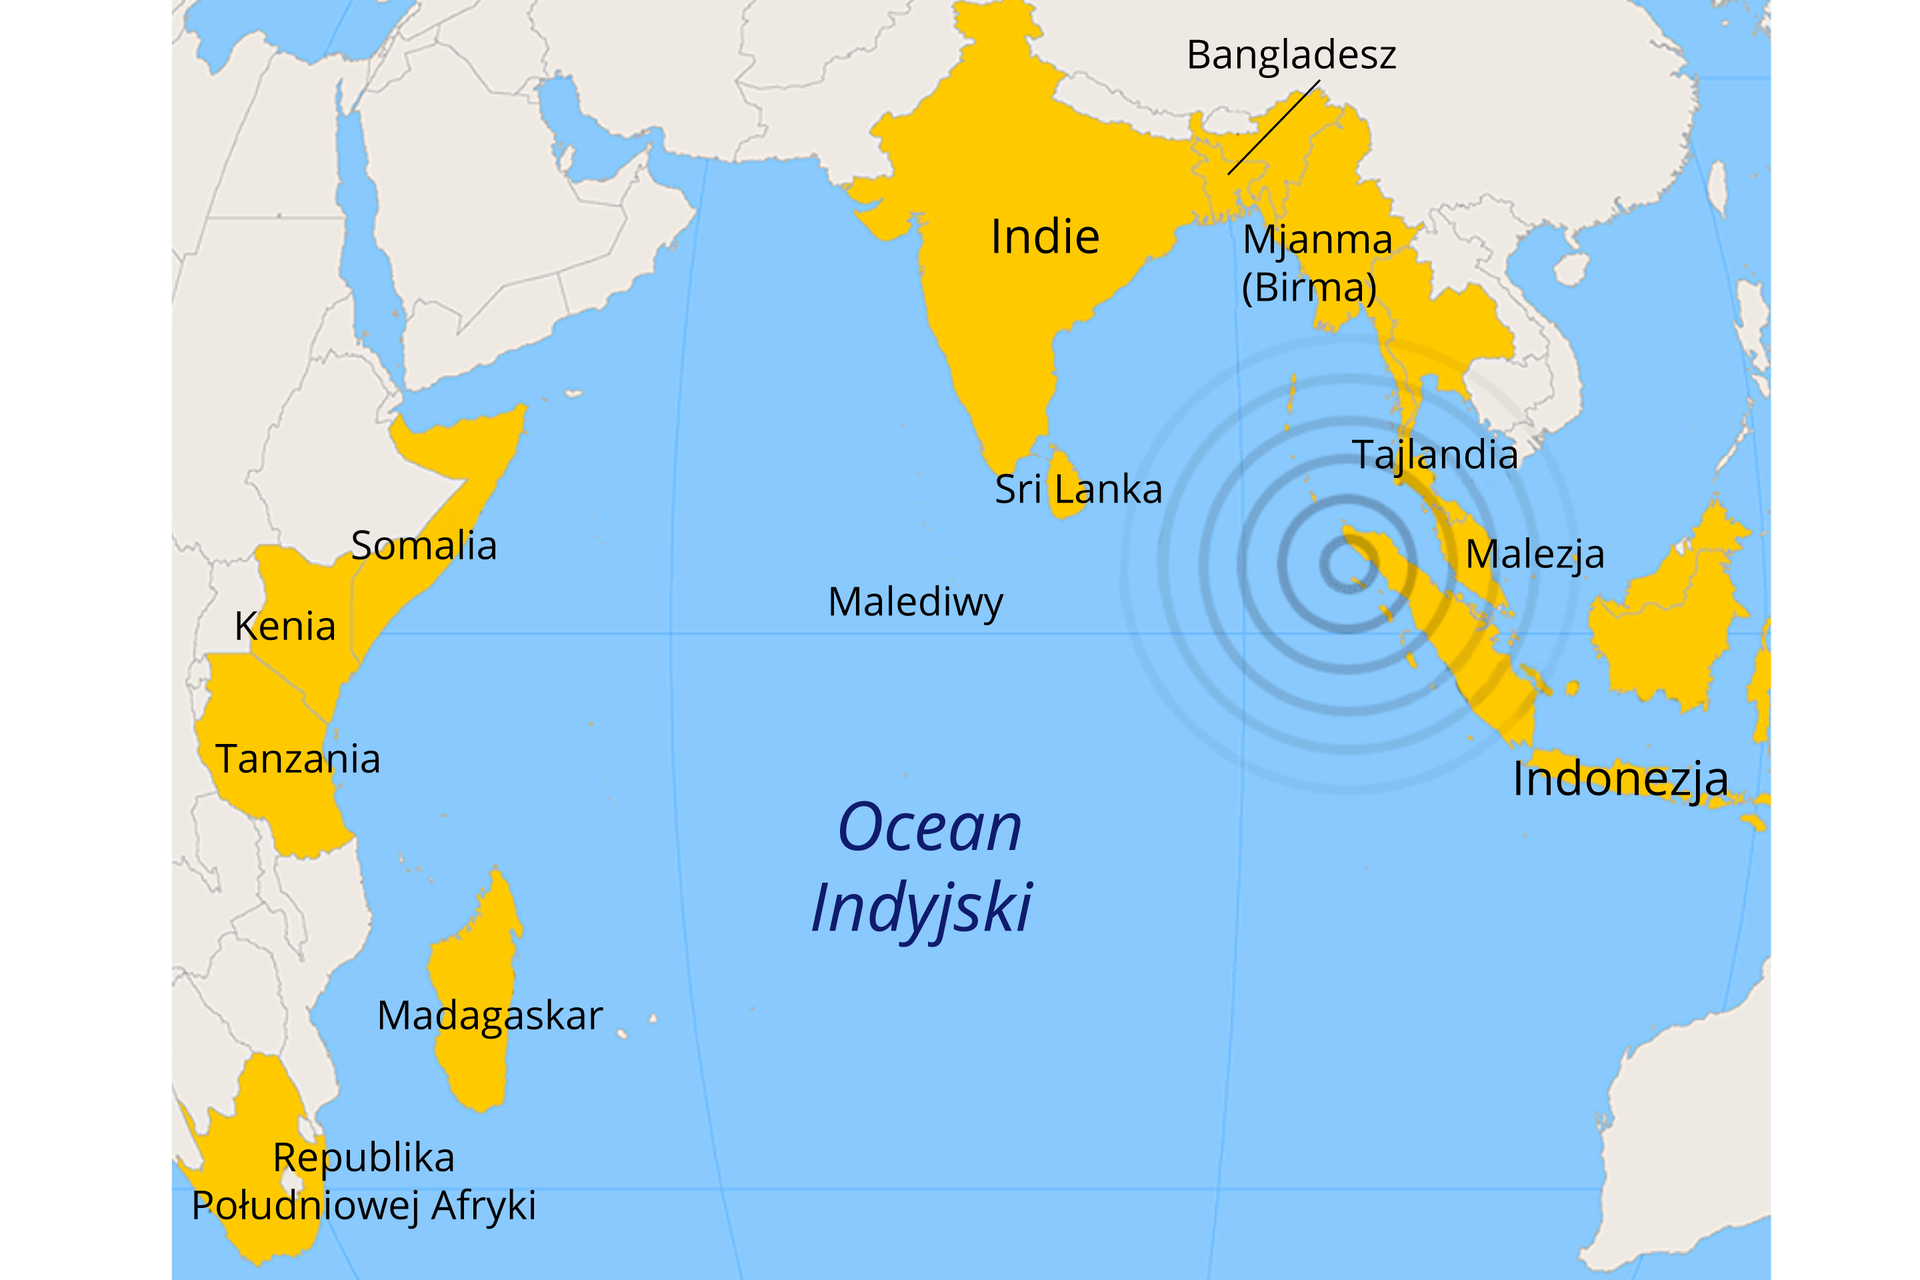 Mapa przedstawia kraje najbardziej dotknięte trzęsieniem ziemi w 2004 roku. Żółtym kolorem zaznaczono Republikę Południowej Afryki, Madagaskar, Tanzanię, Kenię, Somalię, Malediwy, Sri Lankę, Indie, Bangladesz, Birmę, Tajlandię, Malezję oraz Indonezję. U północnych wybrzeży Indonezji znajduje się punkt otoczony coraz większymi kręgami – jest to epicentrum trzęsienia ziemi.